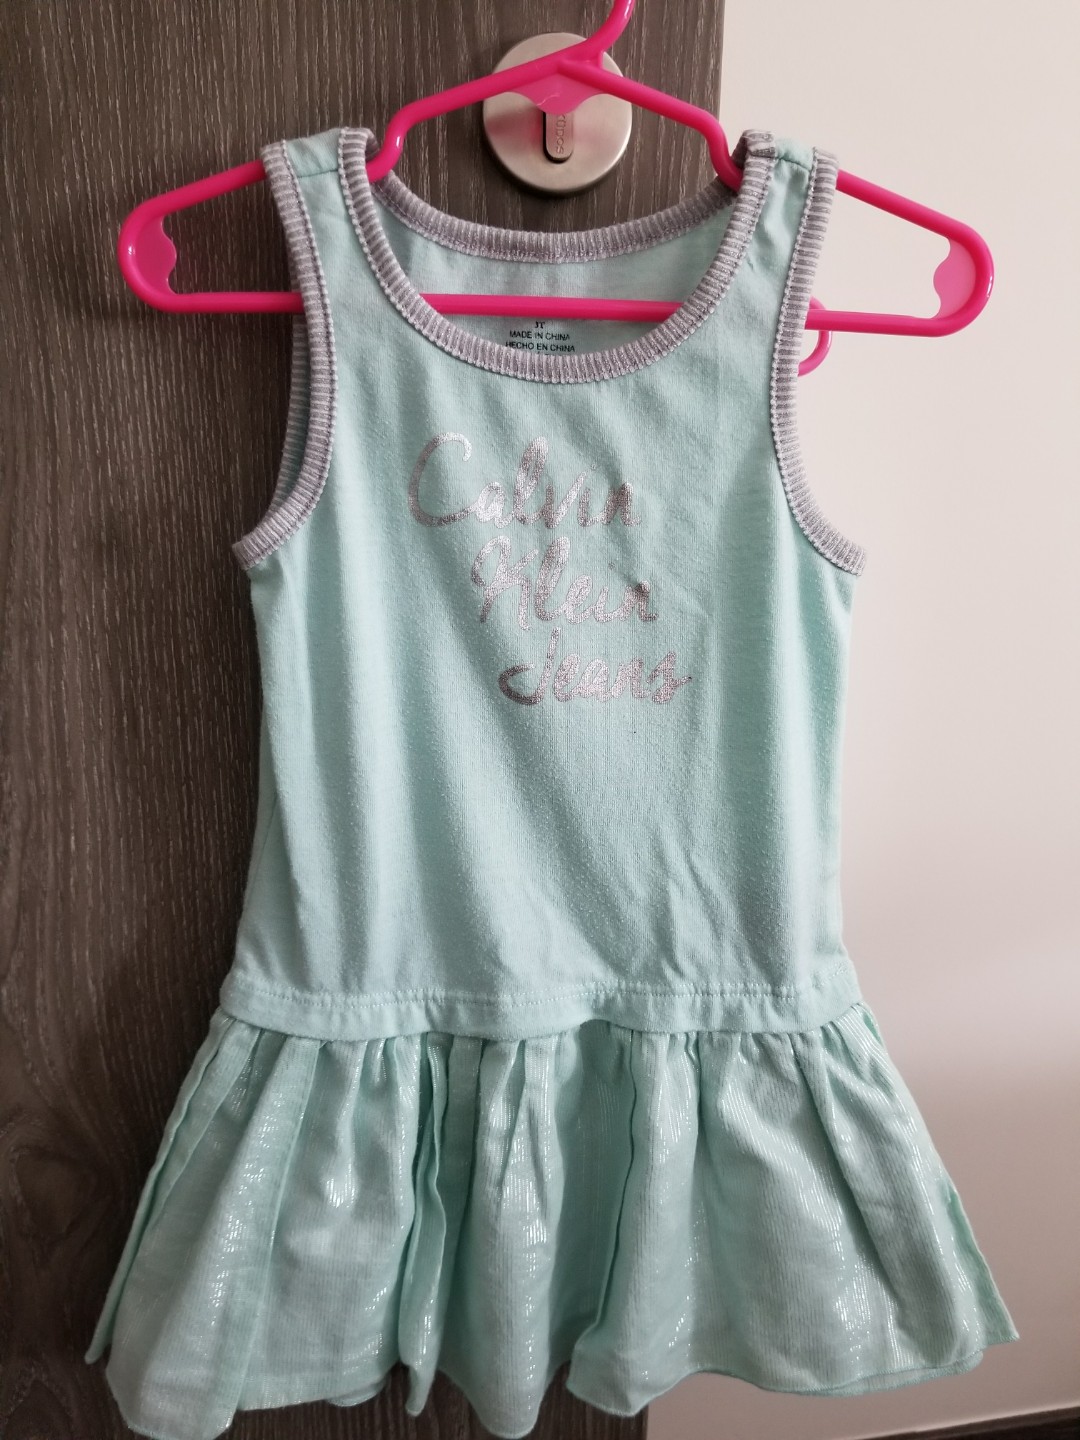 calvin klein toddler clothes